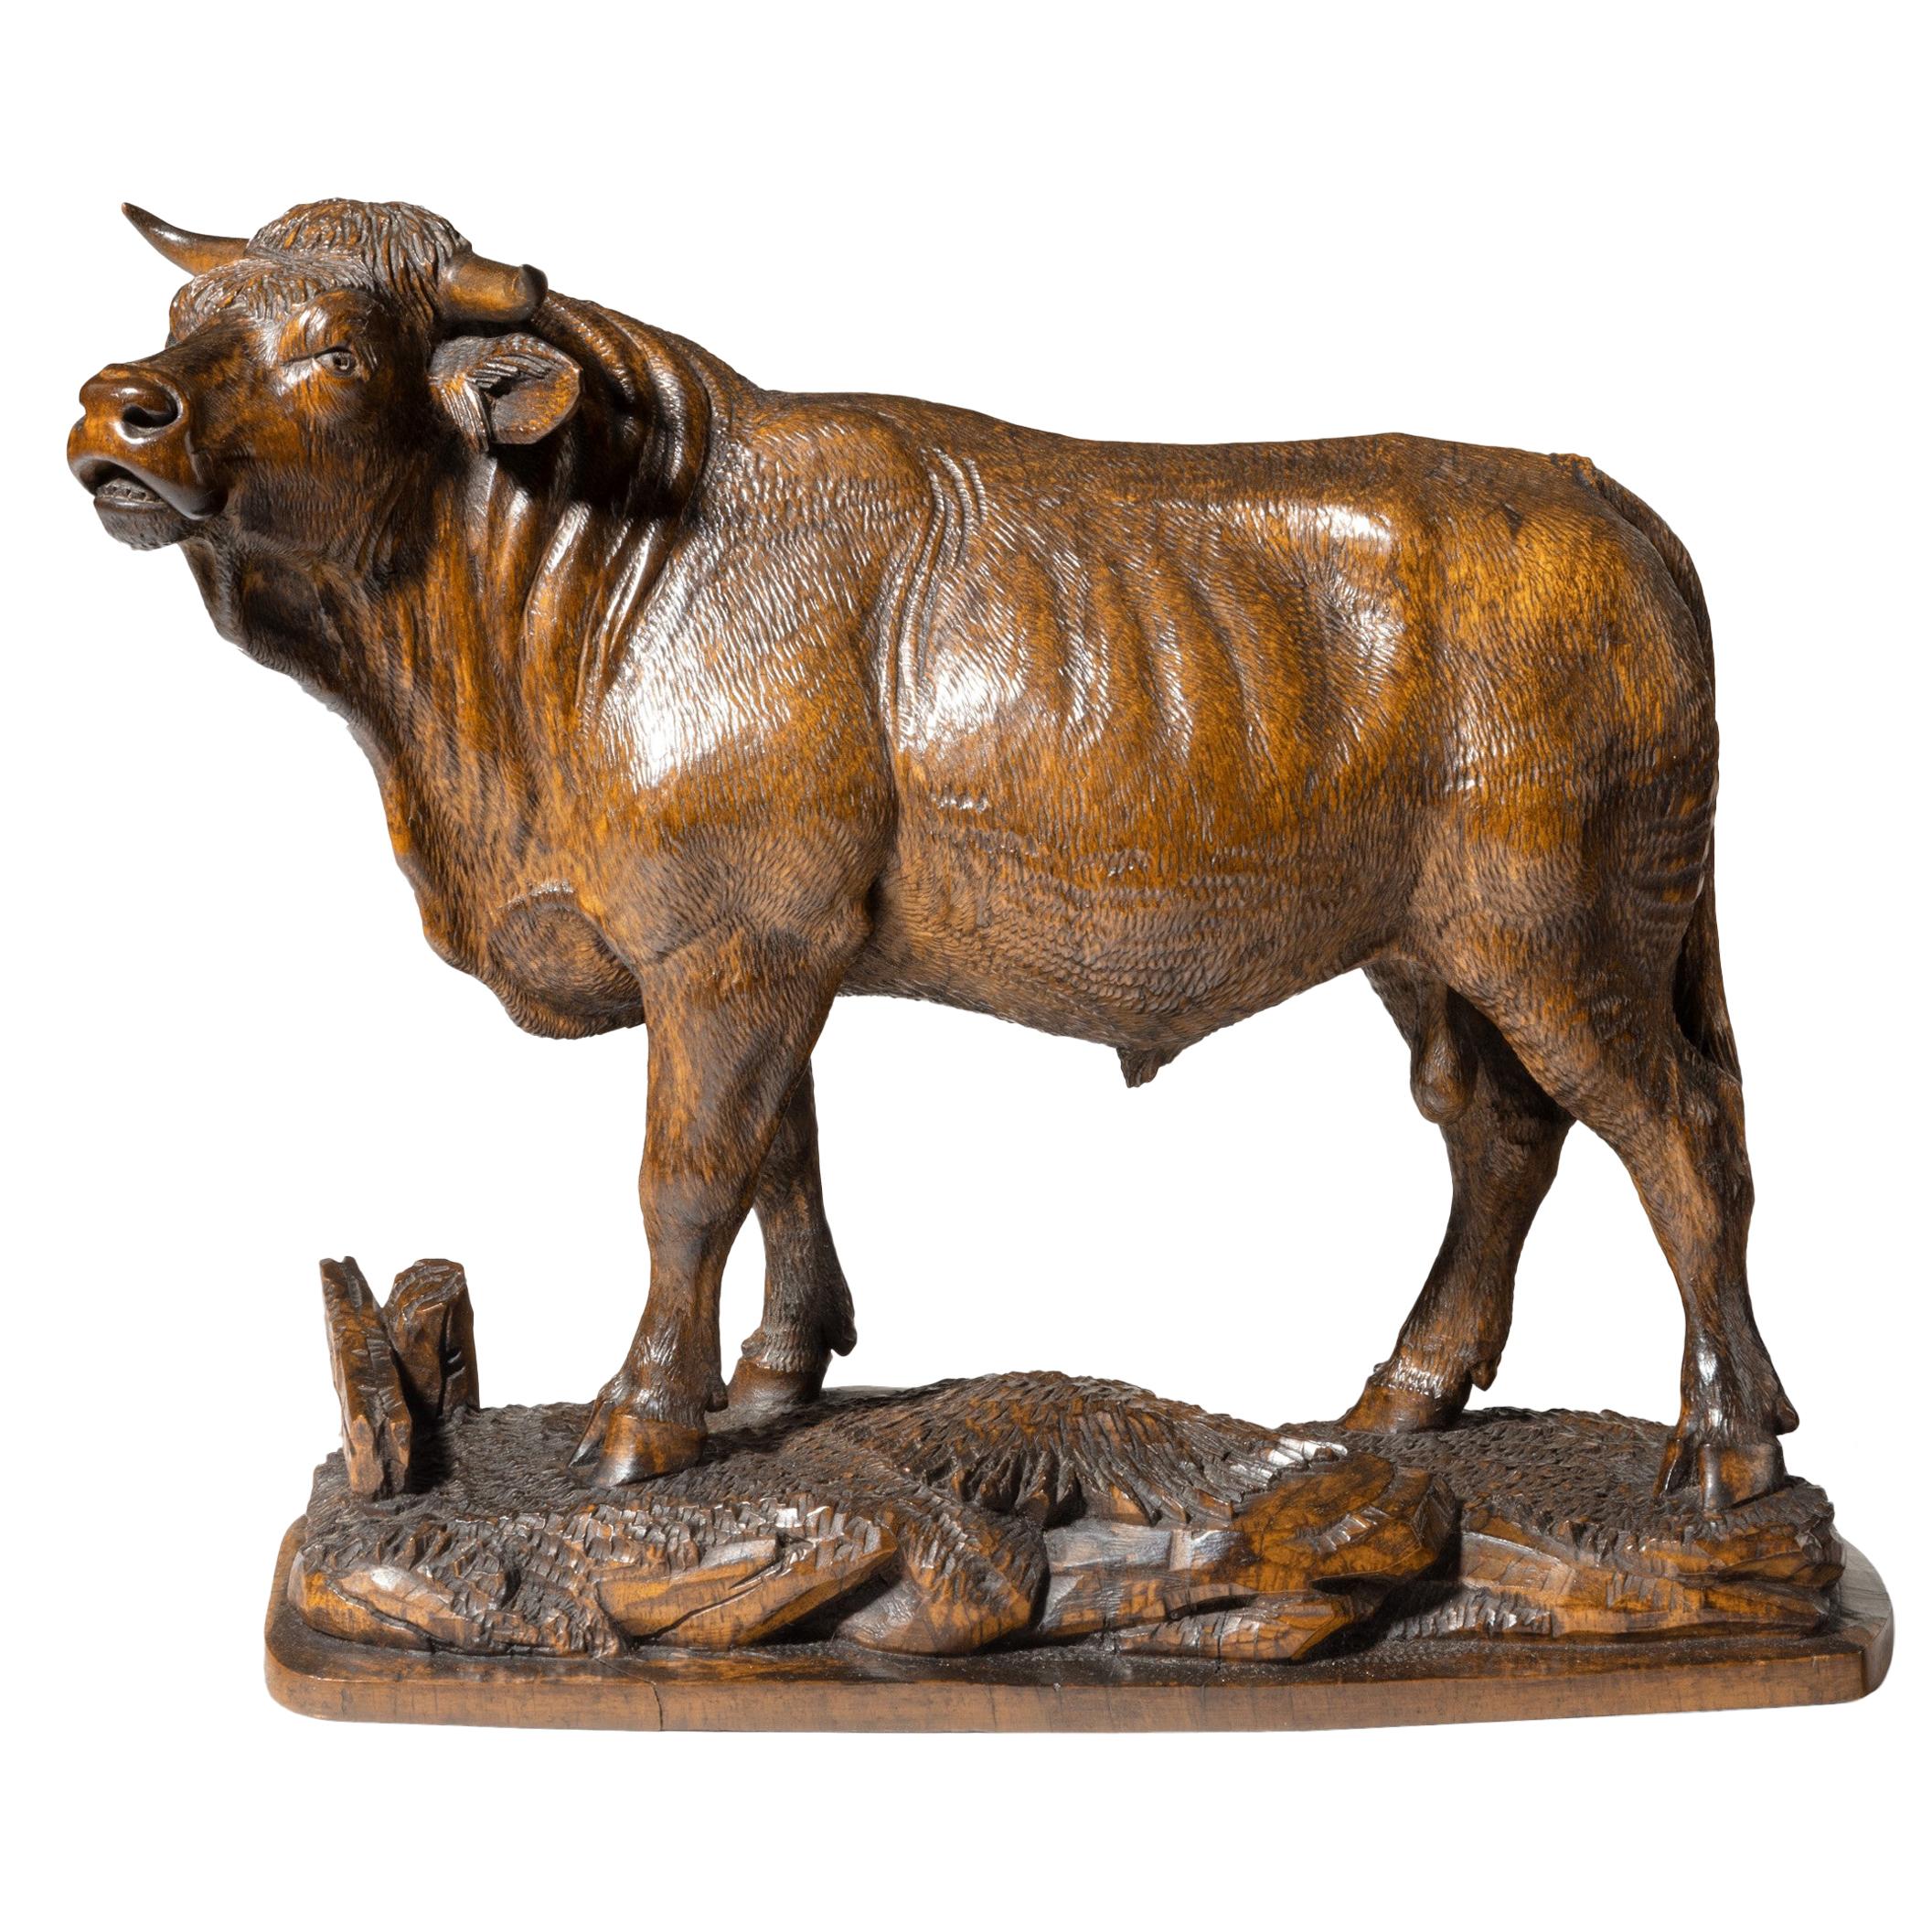 Belle maquette en bois de tilleul représentant un taureau debout, Suisse, vers 1890